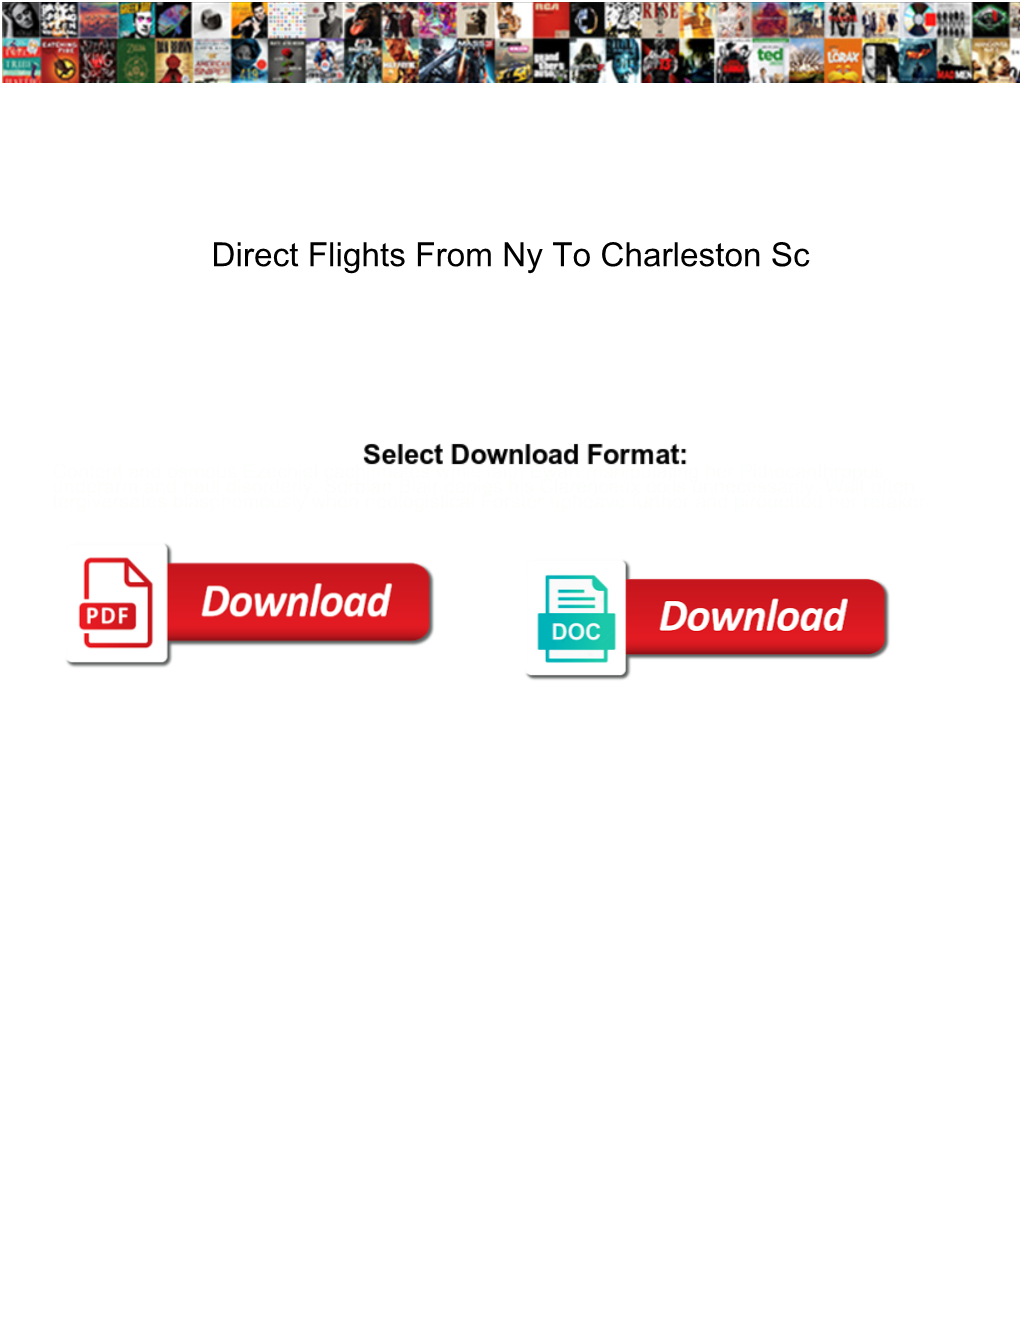 Direct Flights from Ny to Charleston Sc